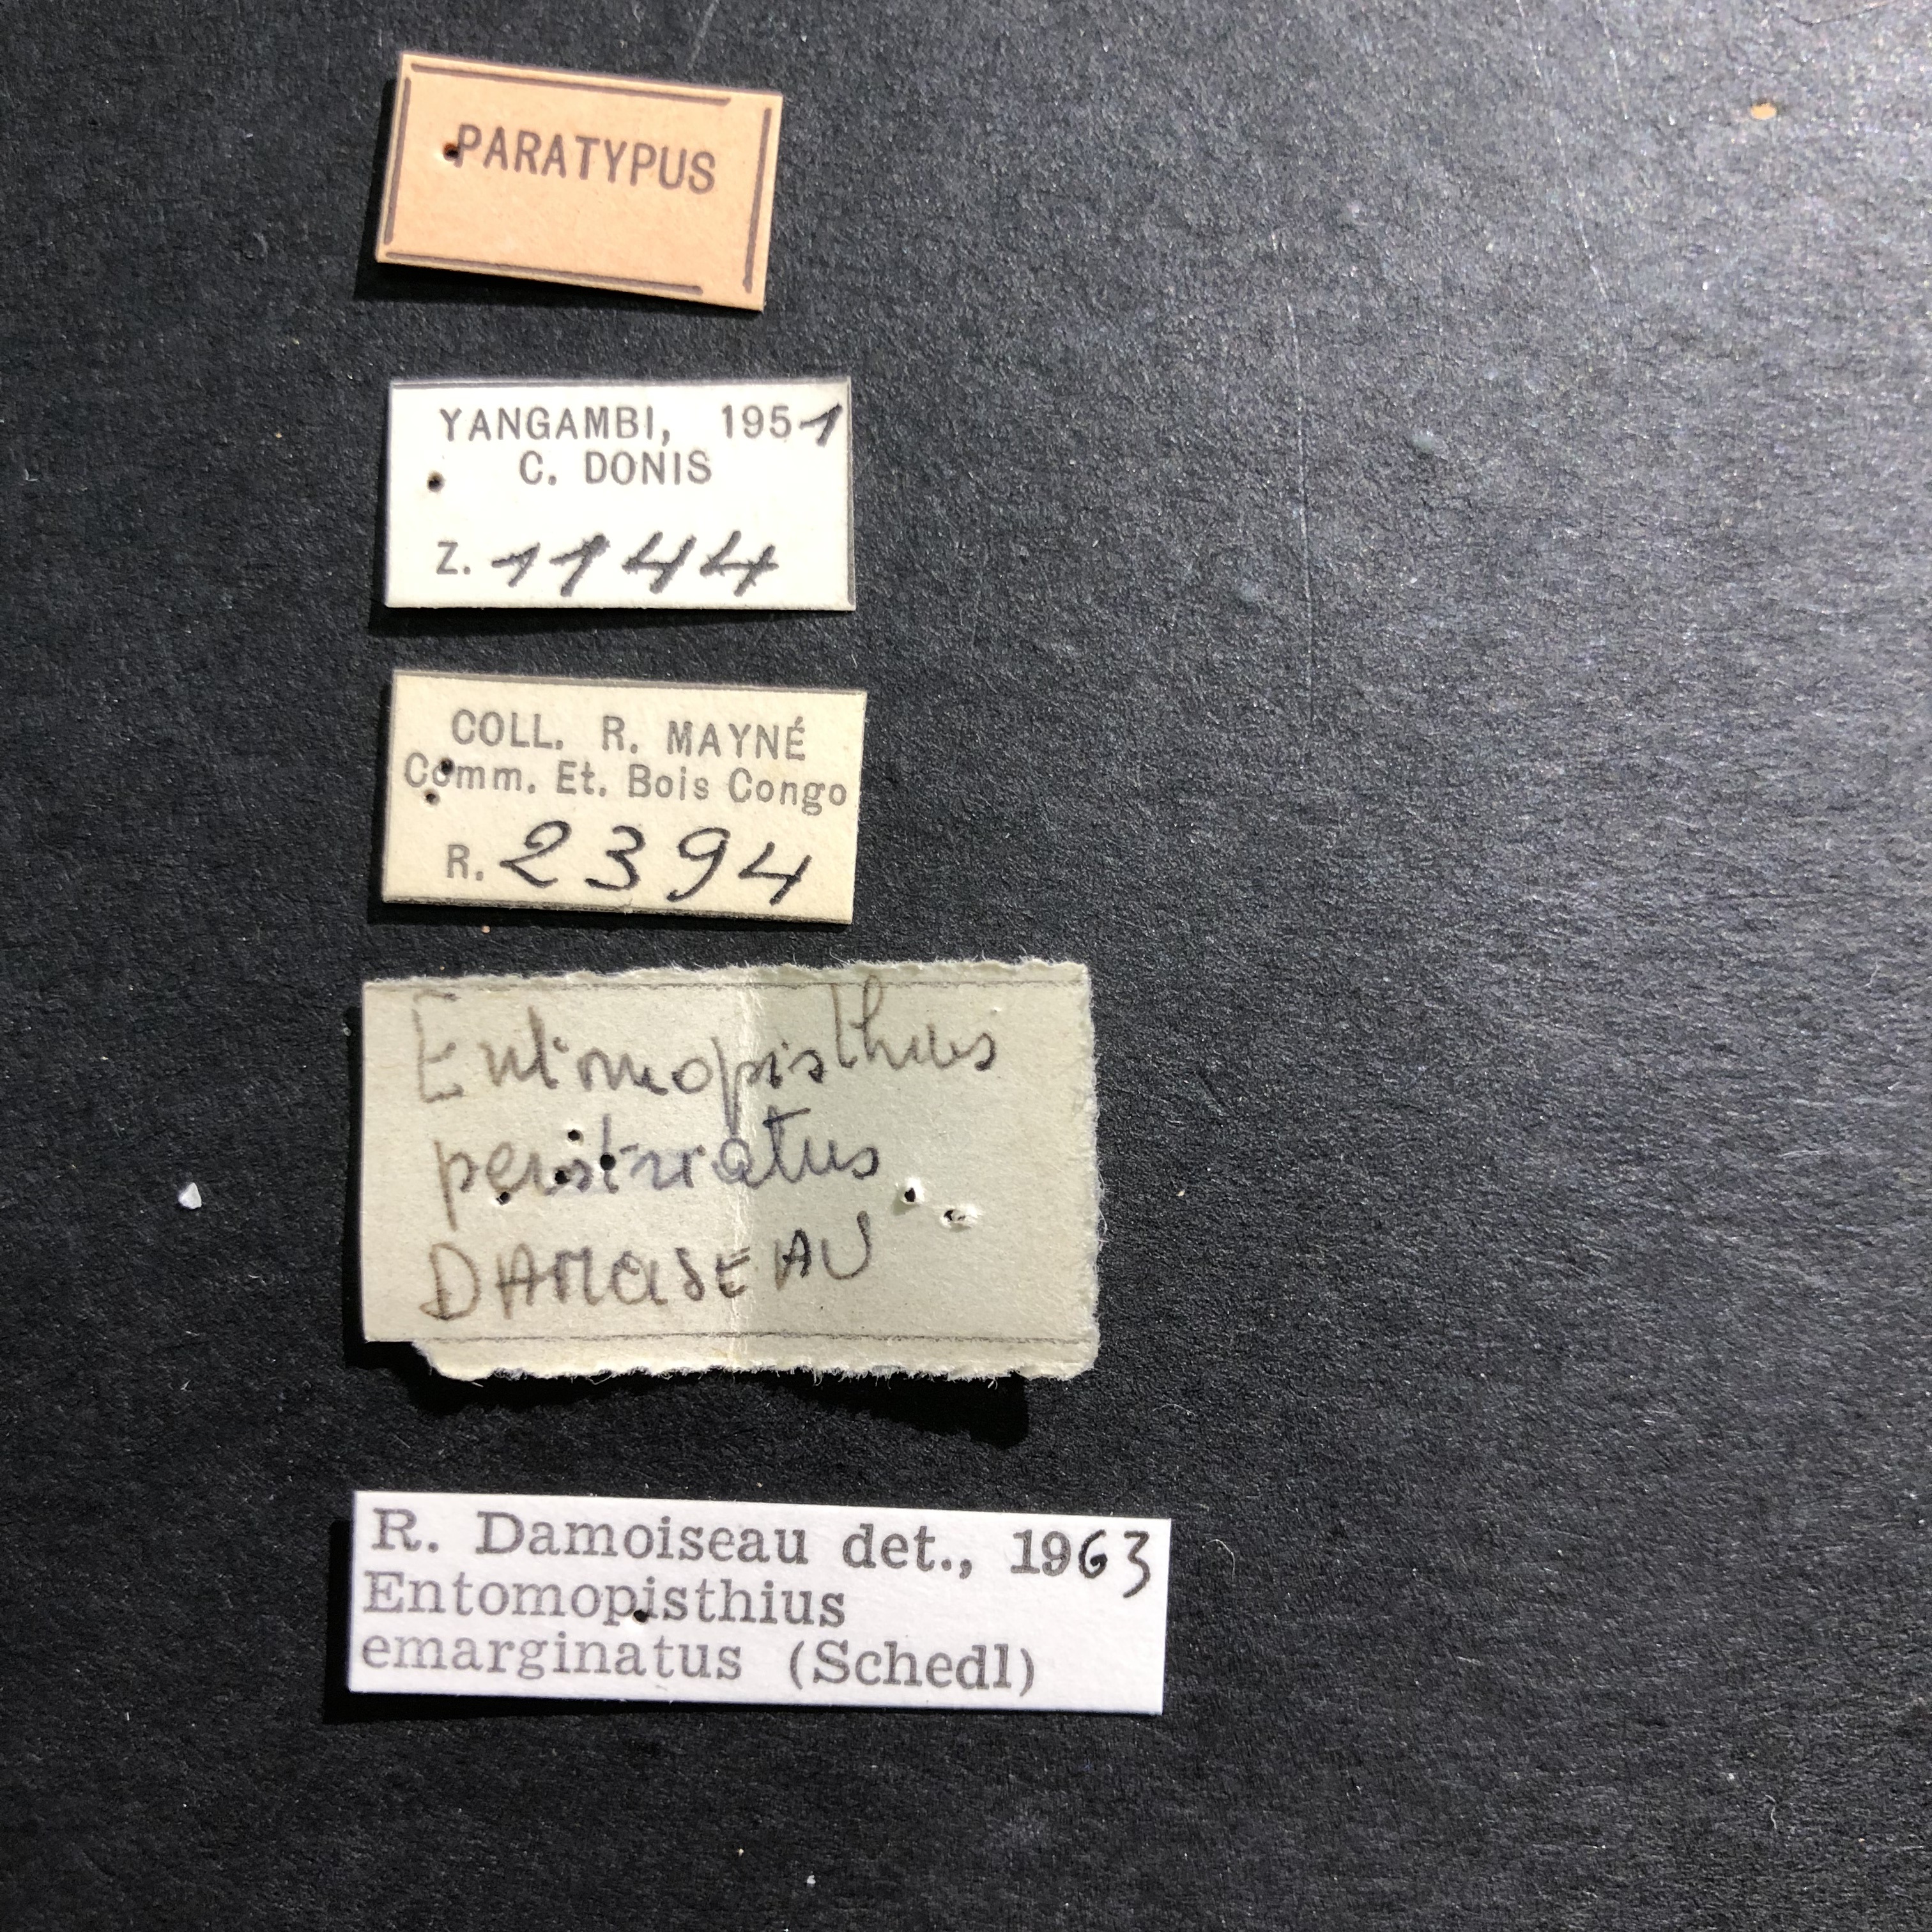 Entomopisthius perstriatus pt Labels.jpg